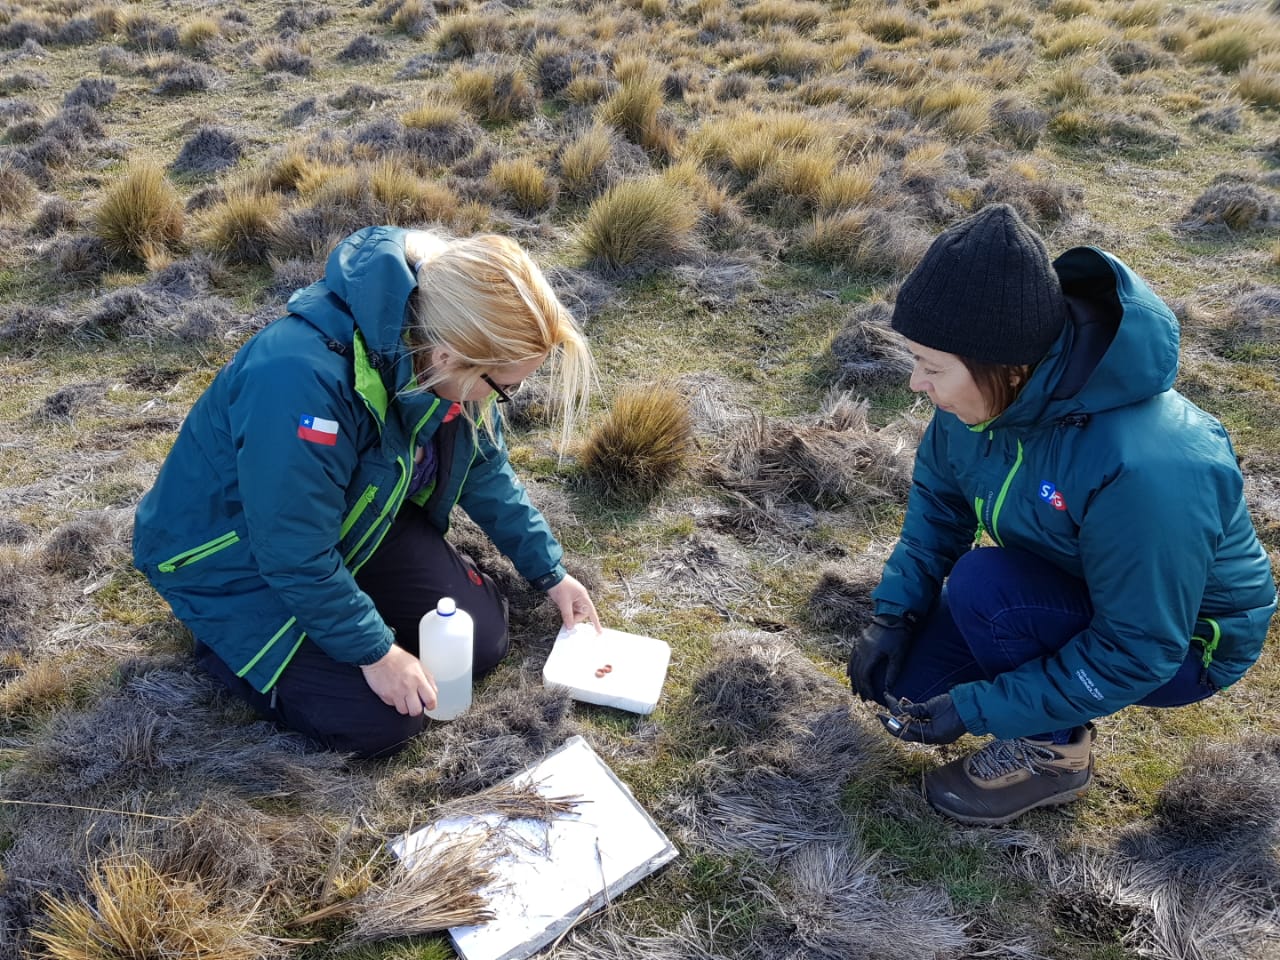 Servicio Agrícola y Ganadero trabaja en determinar la razón de daño en coironales de la Isla Tierra del Fuego: buscan detectar anomalía que afecta a esta especie